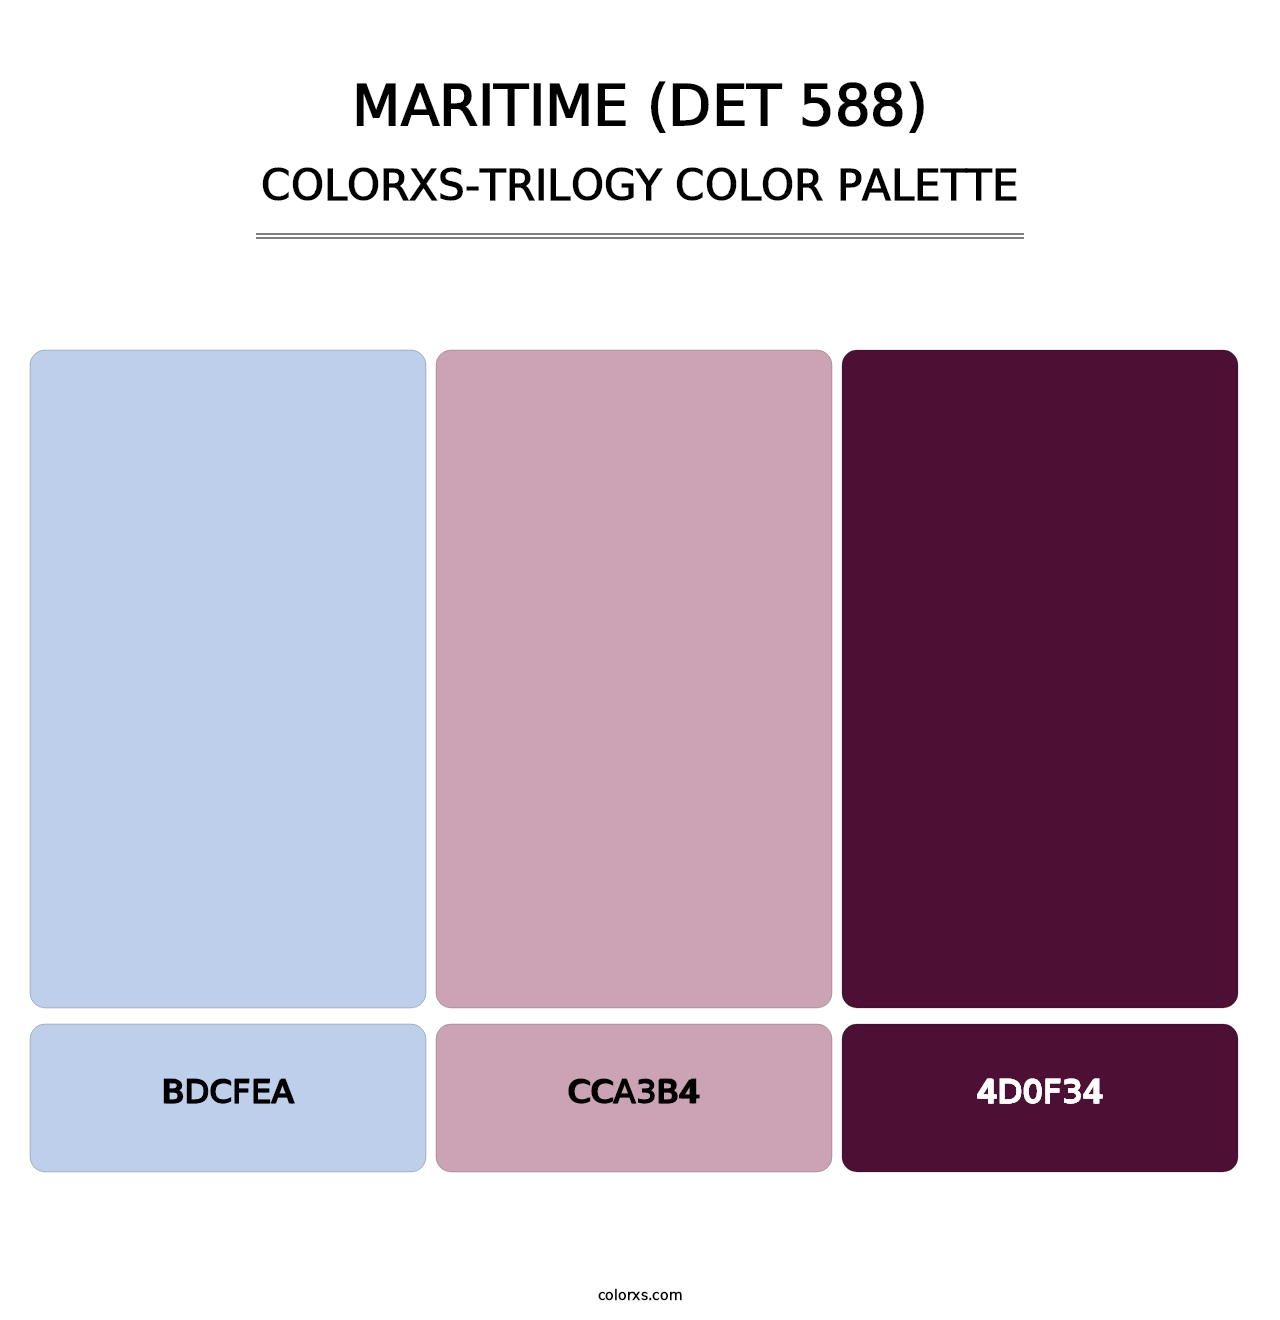 Maritime (DET 588) - Colorxs Trilogy Palette